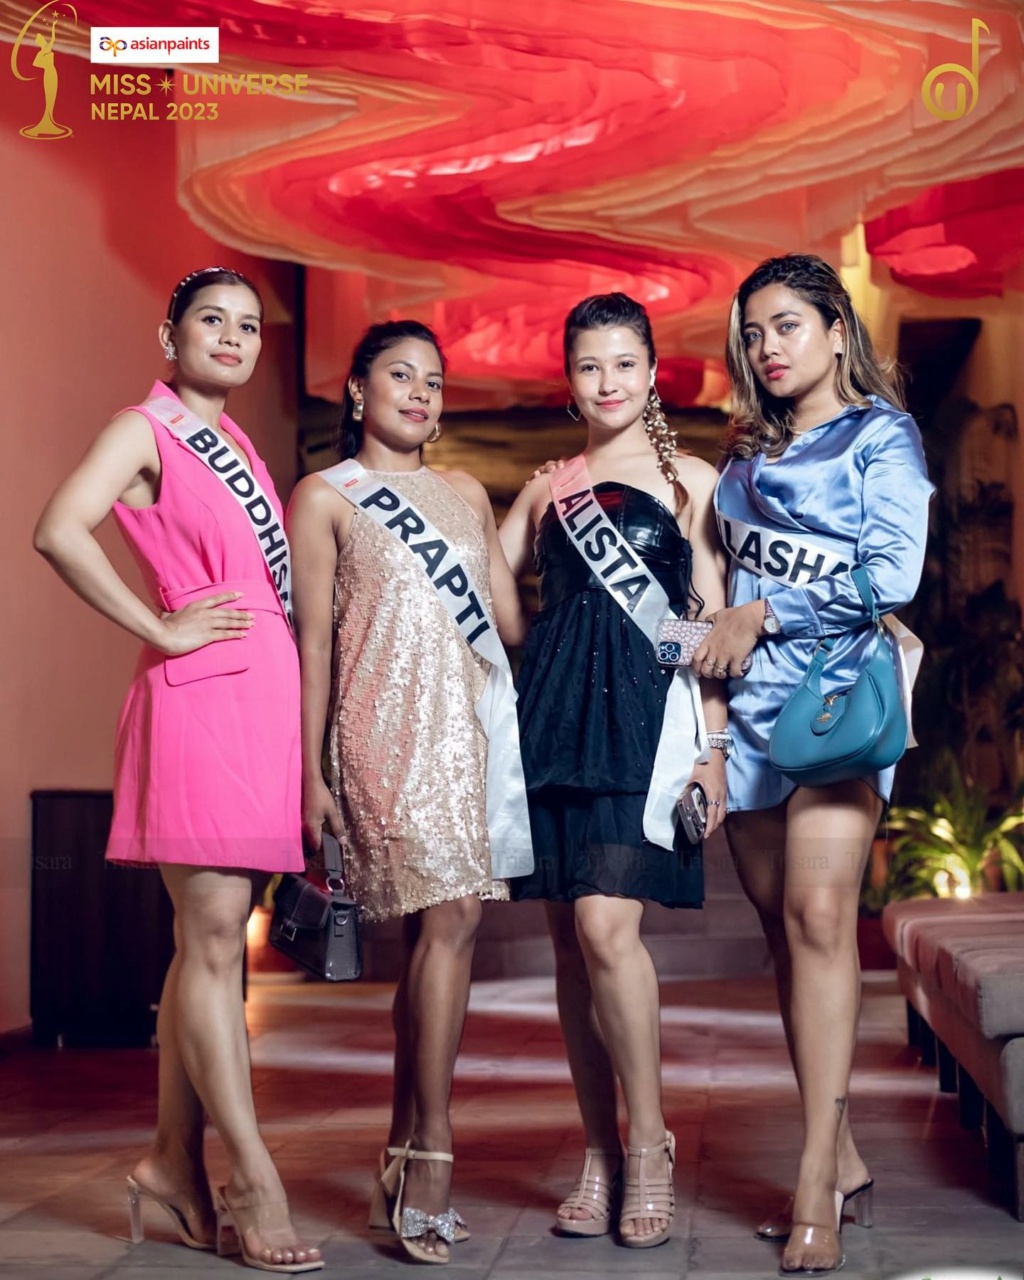 Miss Universe NEPAL 2023 Ins12062